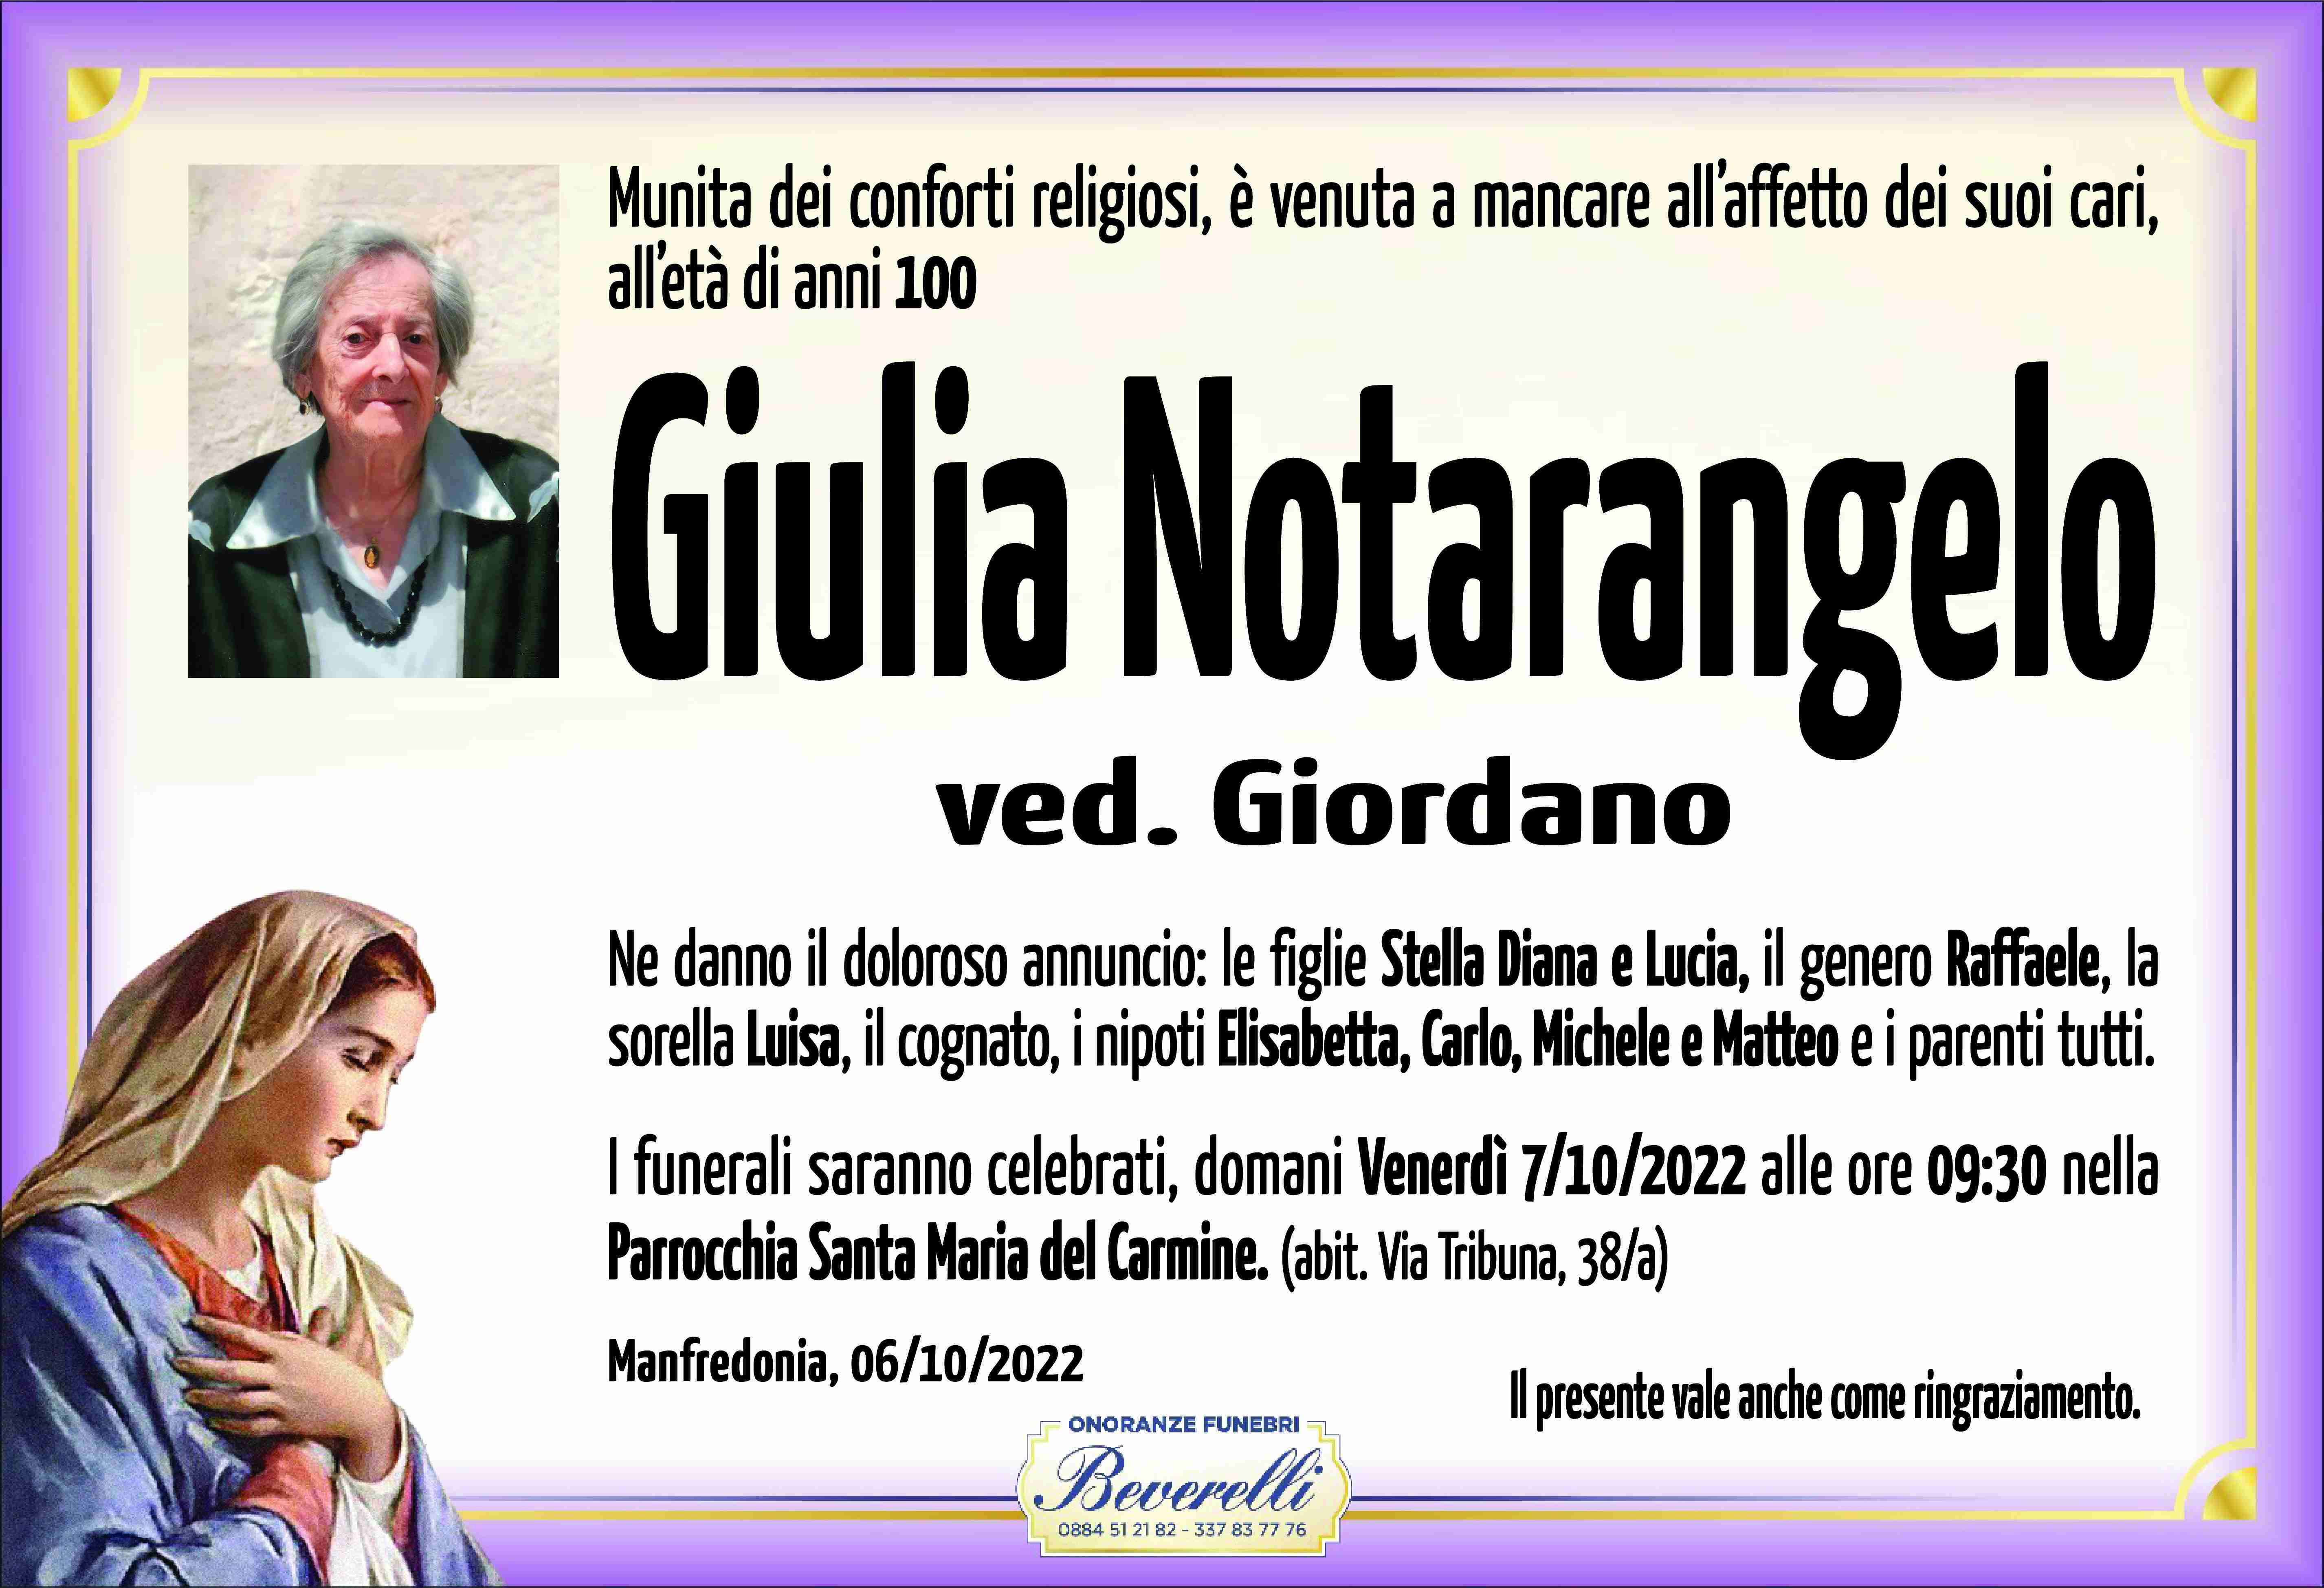 Giulia Notarangelo